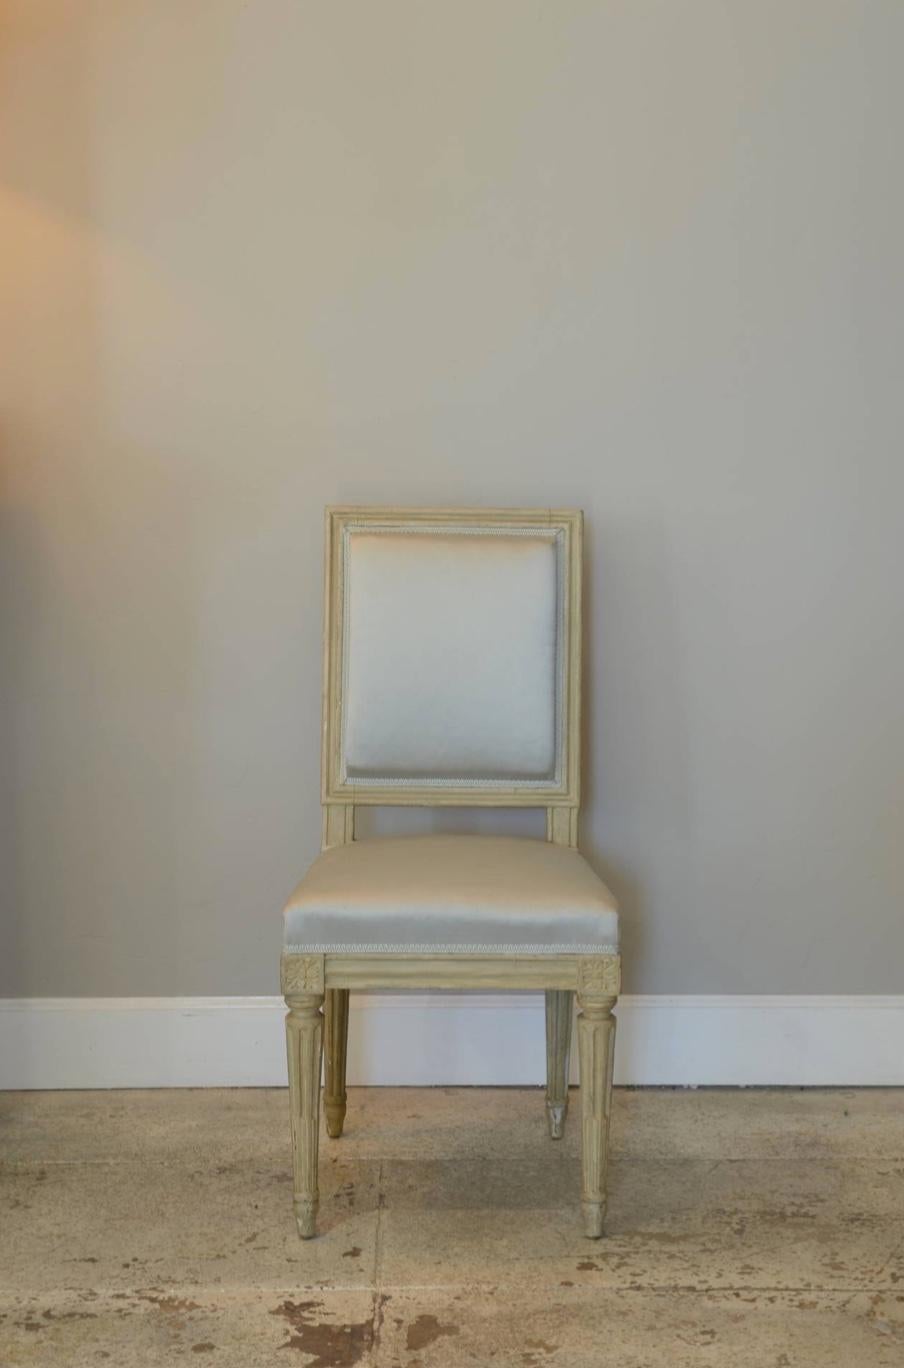 Paire de chaises de style Louis XVI chic par Armand-Albert Rateau.

Estampillé A A RATEAU et numéroté.

Armand-Albert Rateau (1882 - 1938) était un fabricant de meubles et un architecte d'intérieur français. En 2006, The Grove Encyclopedia of